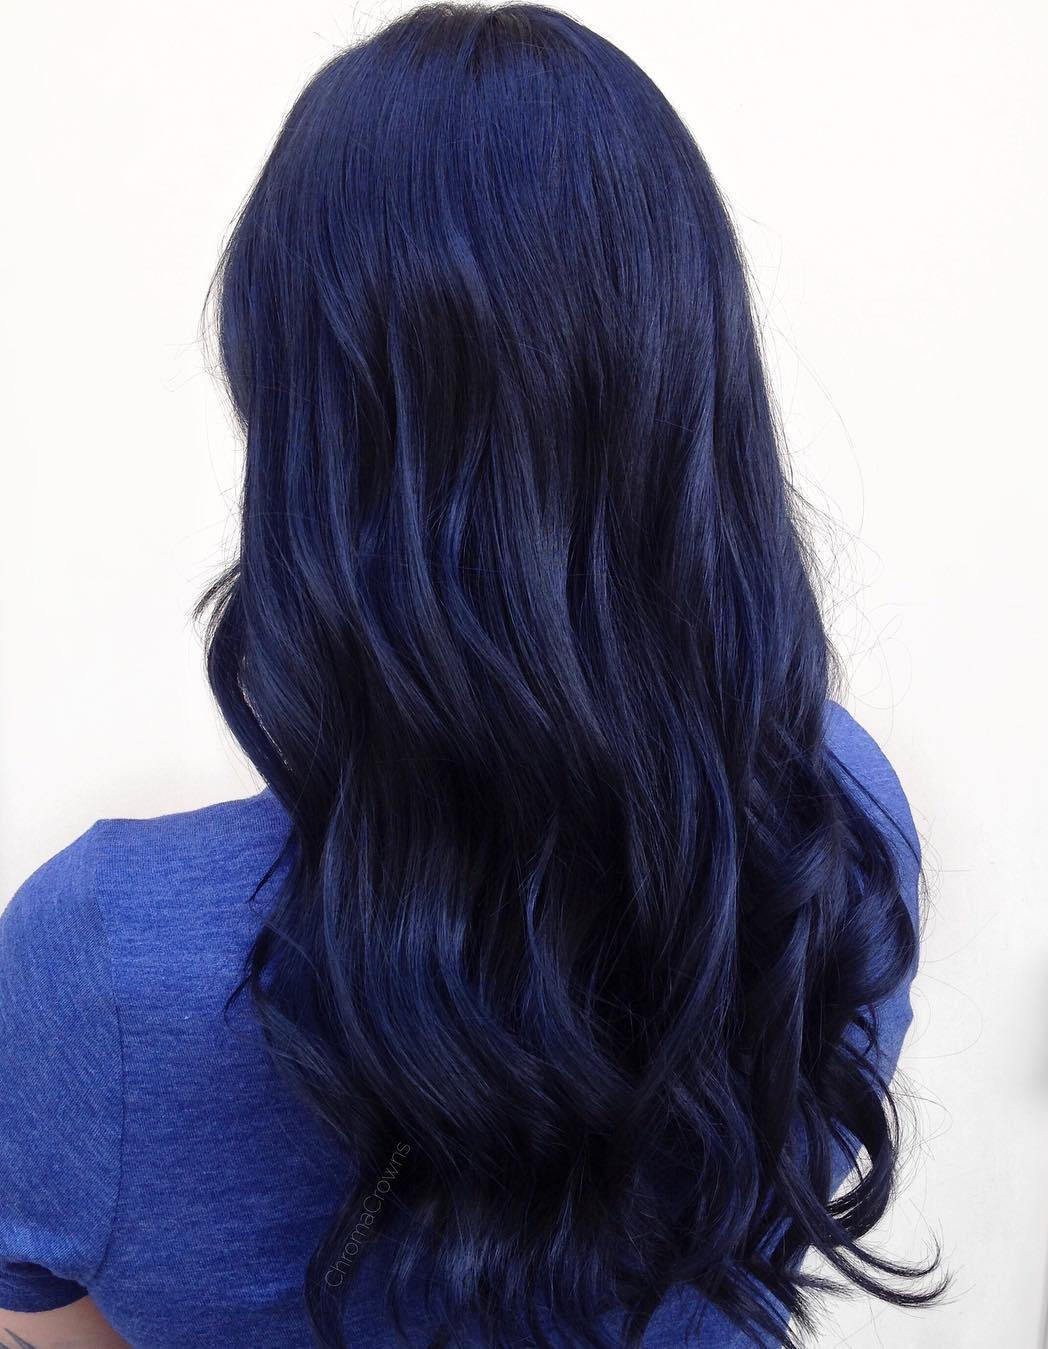 长长的蓝黑色头发